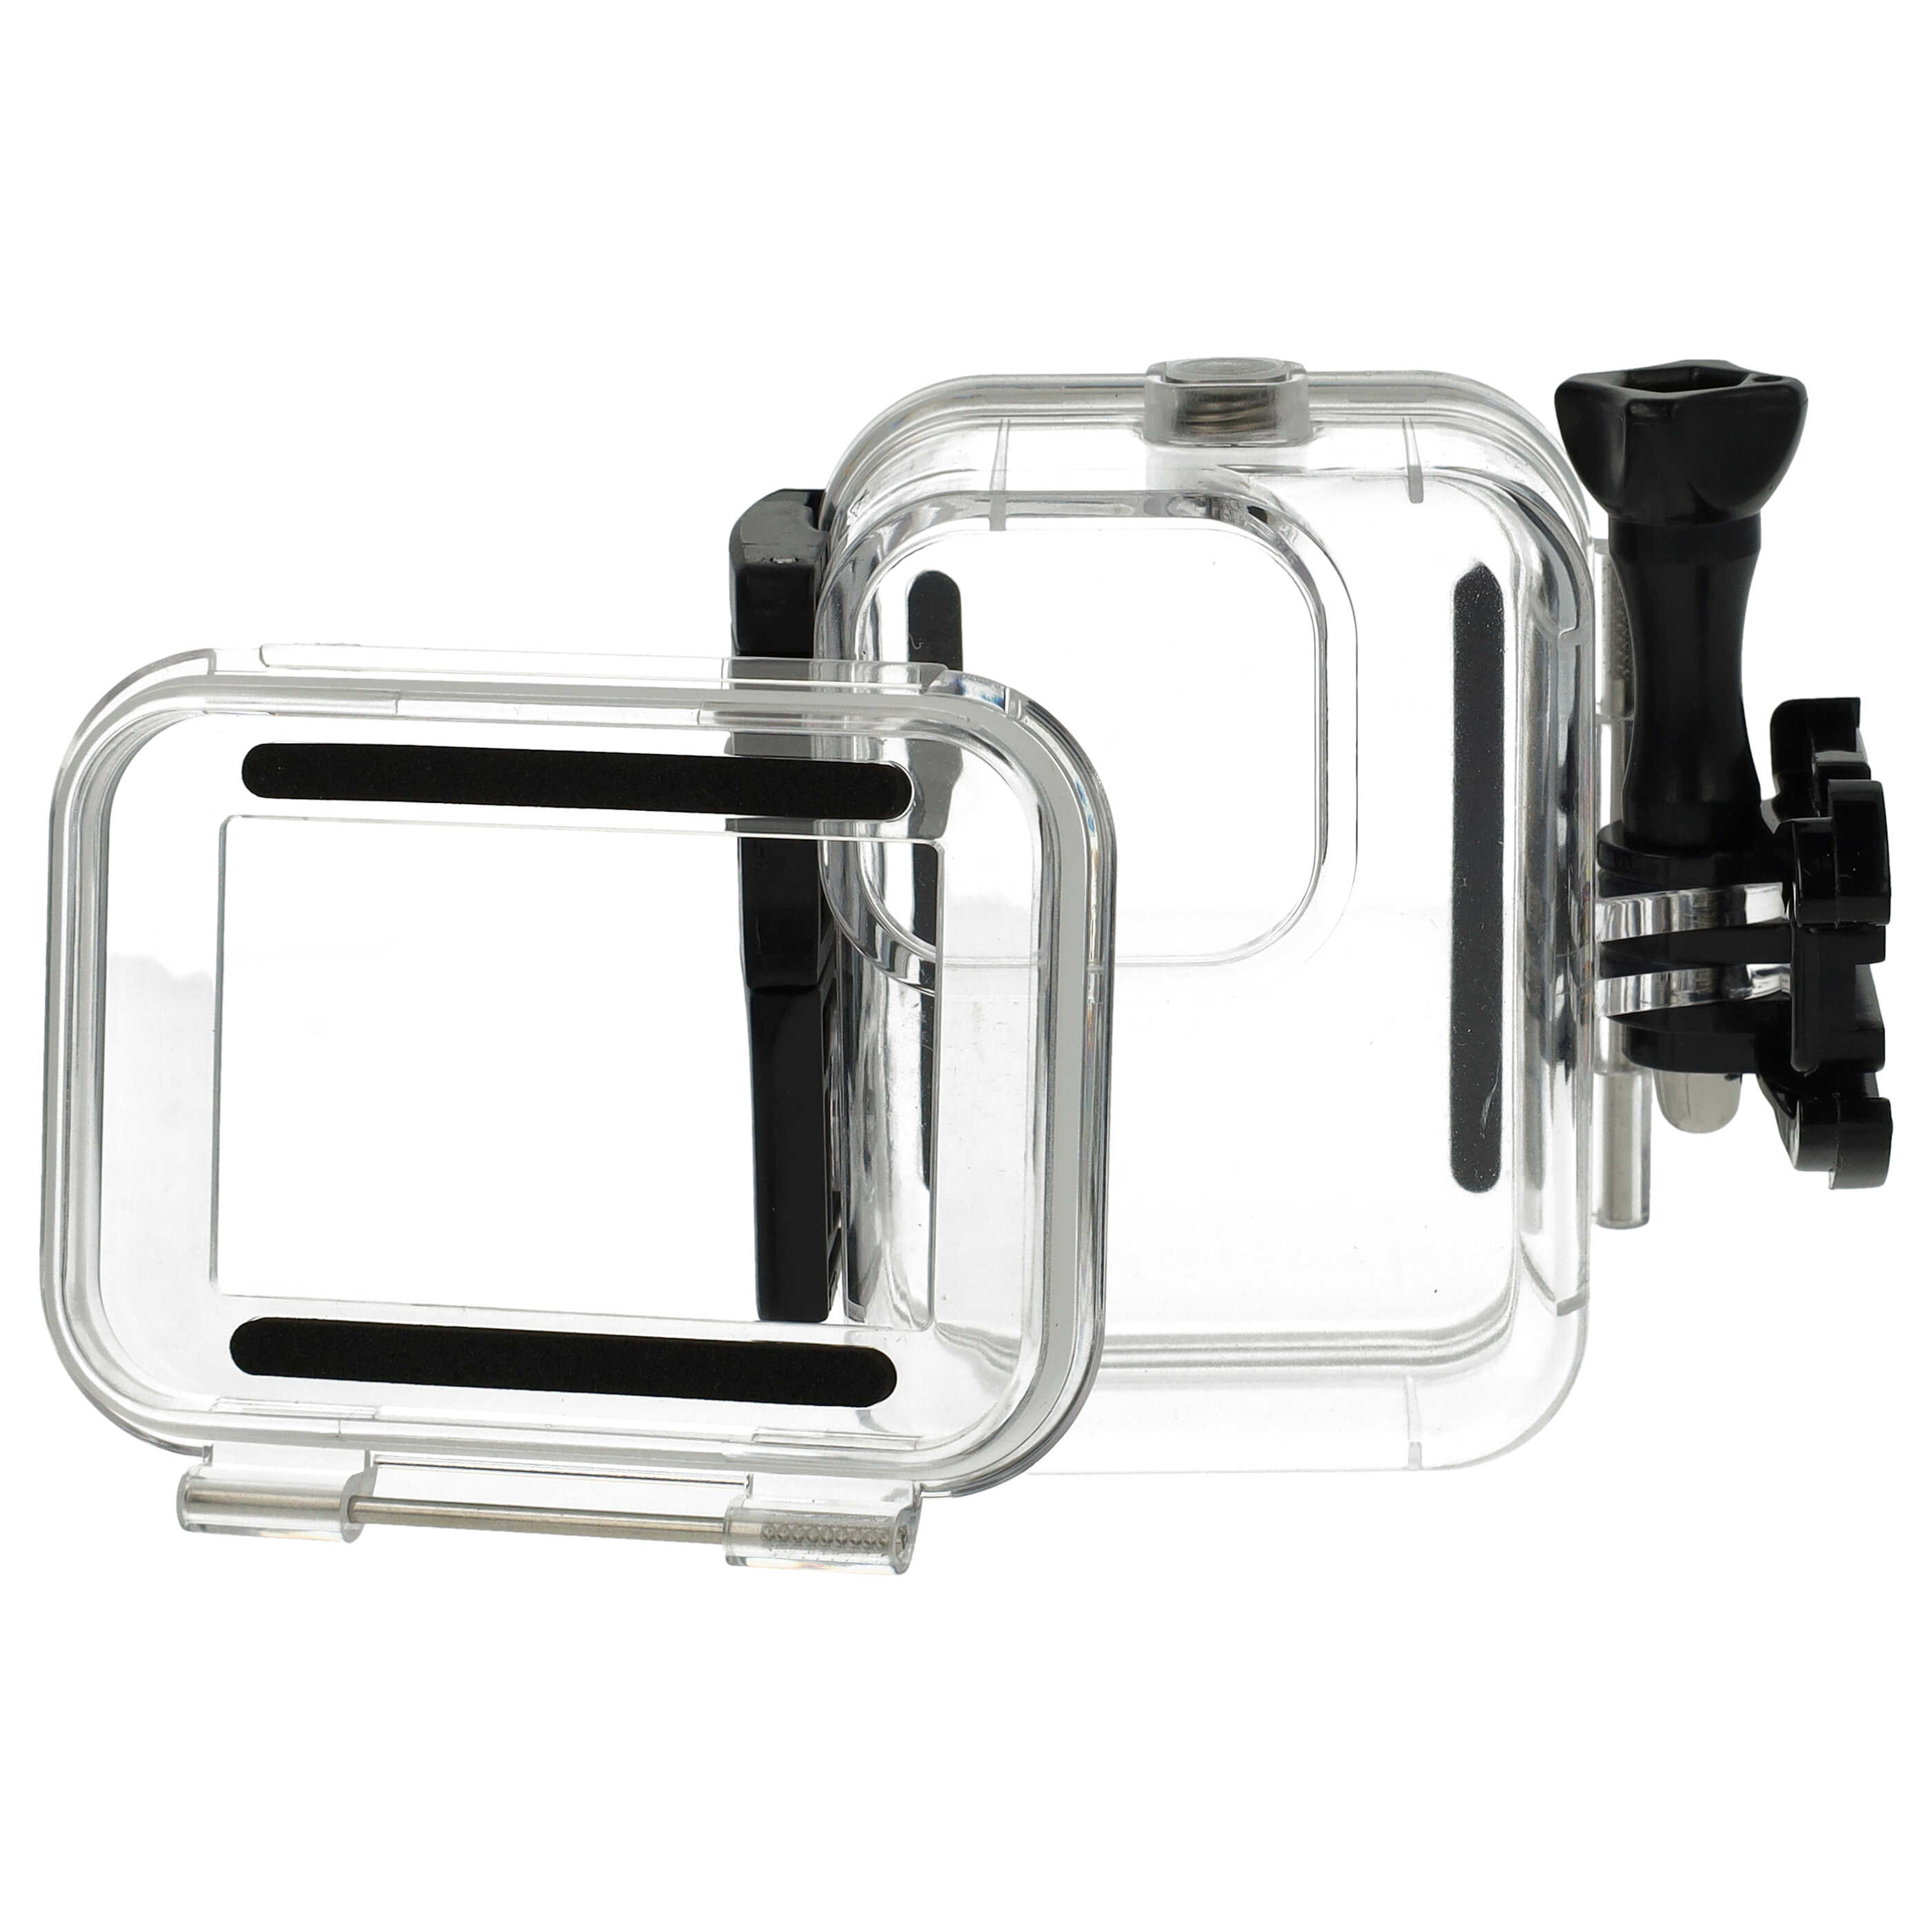 Carcasa sumergible para cámaras acción GoPro Hero 9, 10, 11 - Profundidad máx. 60 m